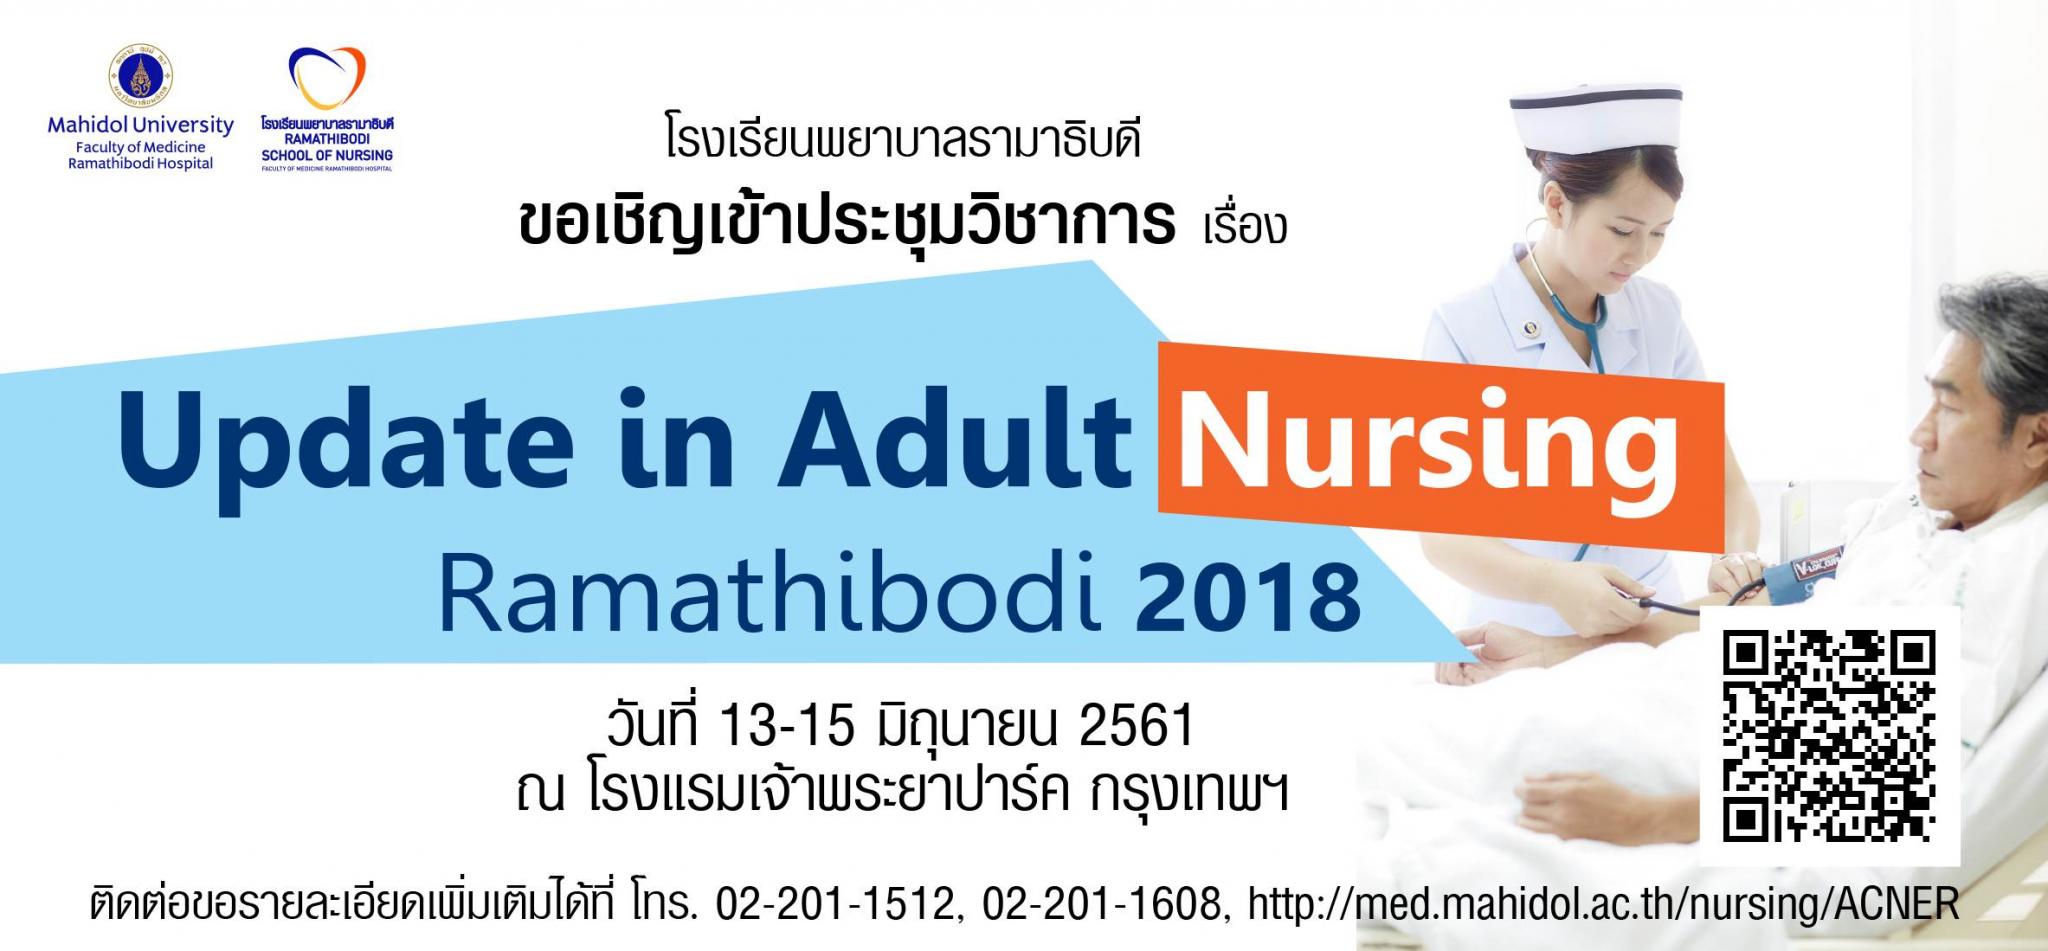 ขอเชิญเข้าร่วมการประชุมวิชาการ เรื่อง Update in Adult Nursing Ramathibodi 2018